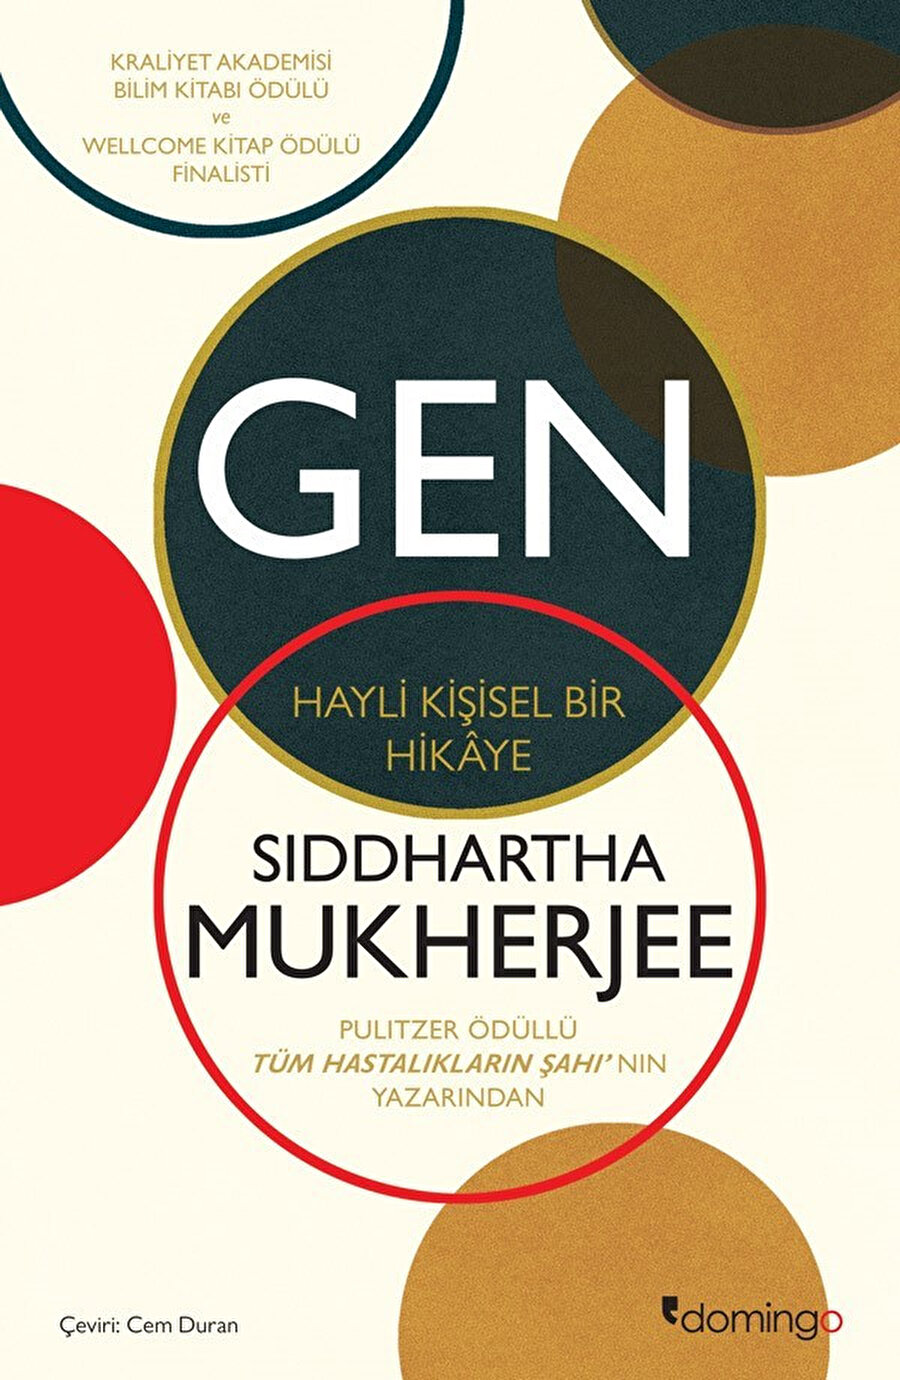 Gen: Hayli Kişisel Bir Hikâye,Siddhartha Mukherjee, çev. Cem Duran, Domingo Yayınları